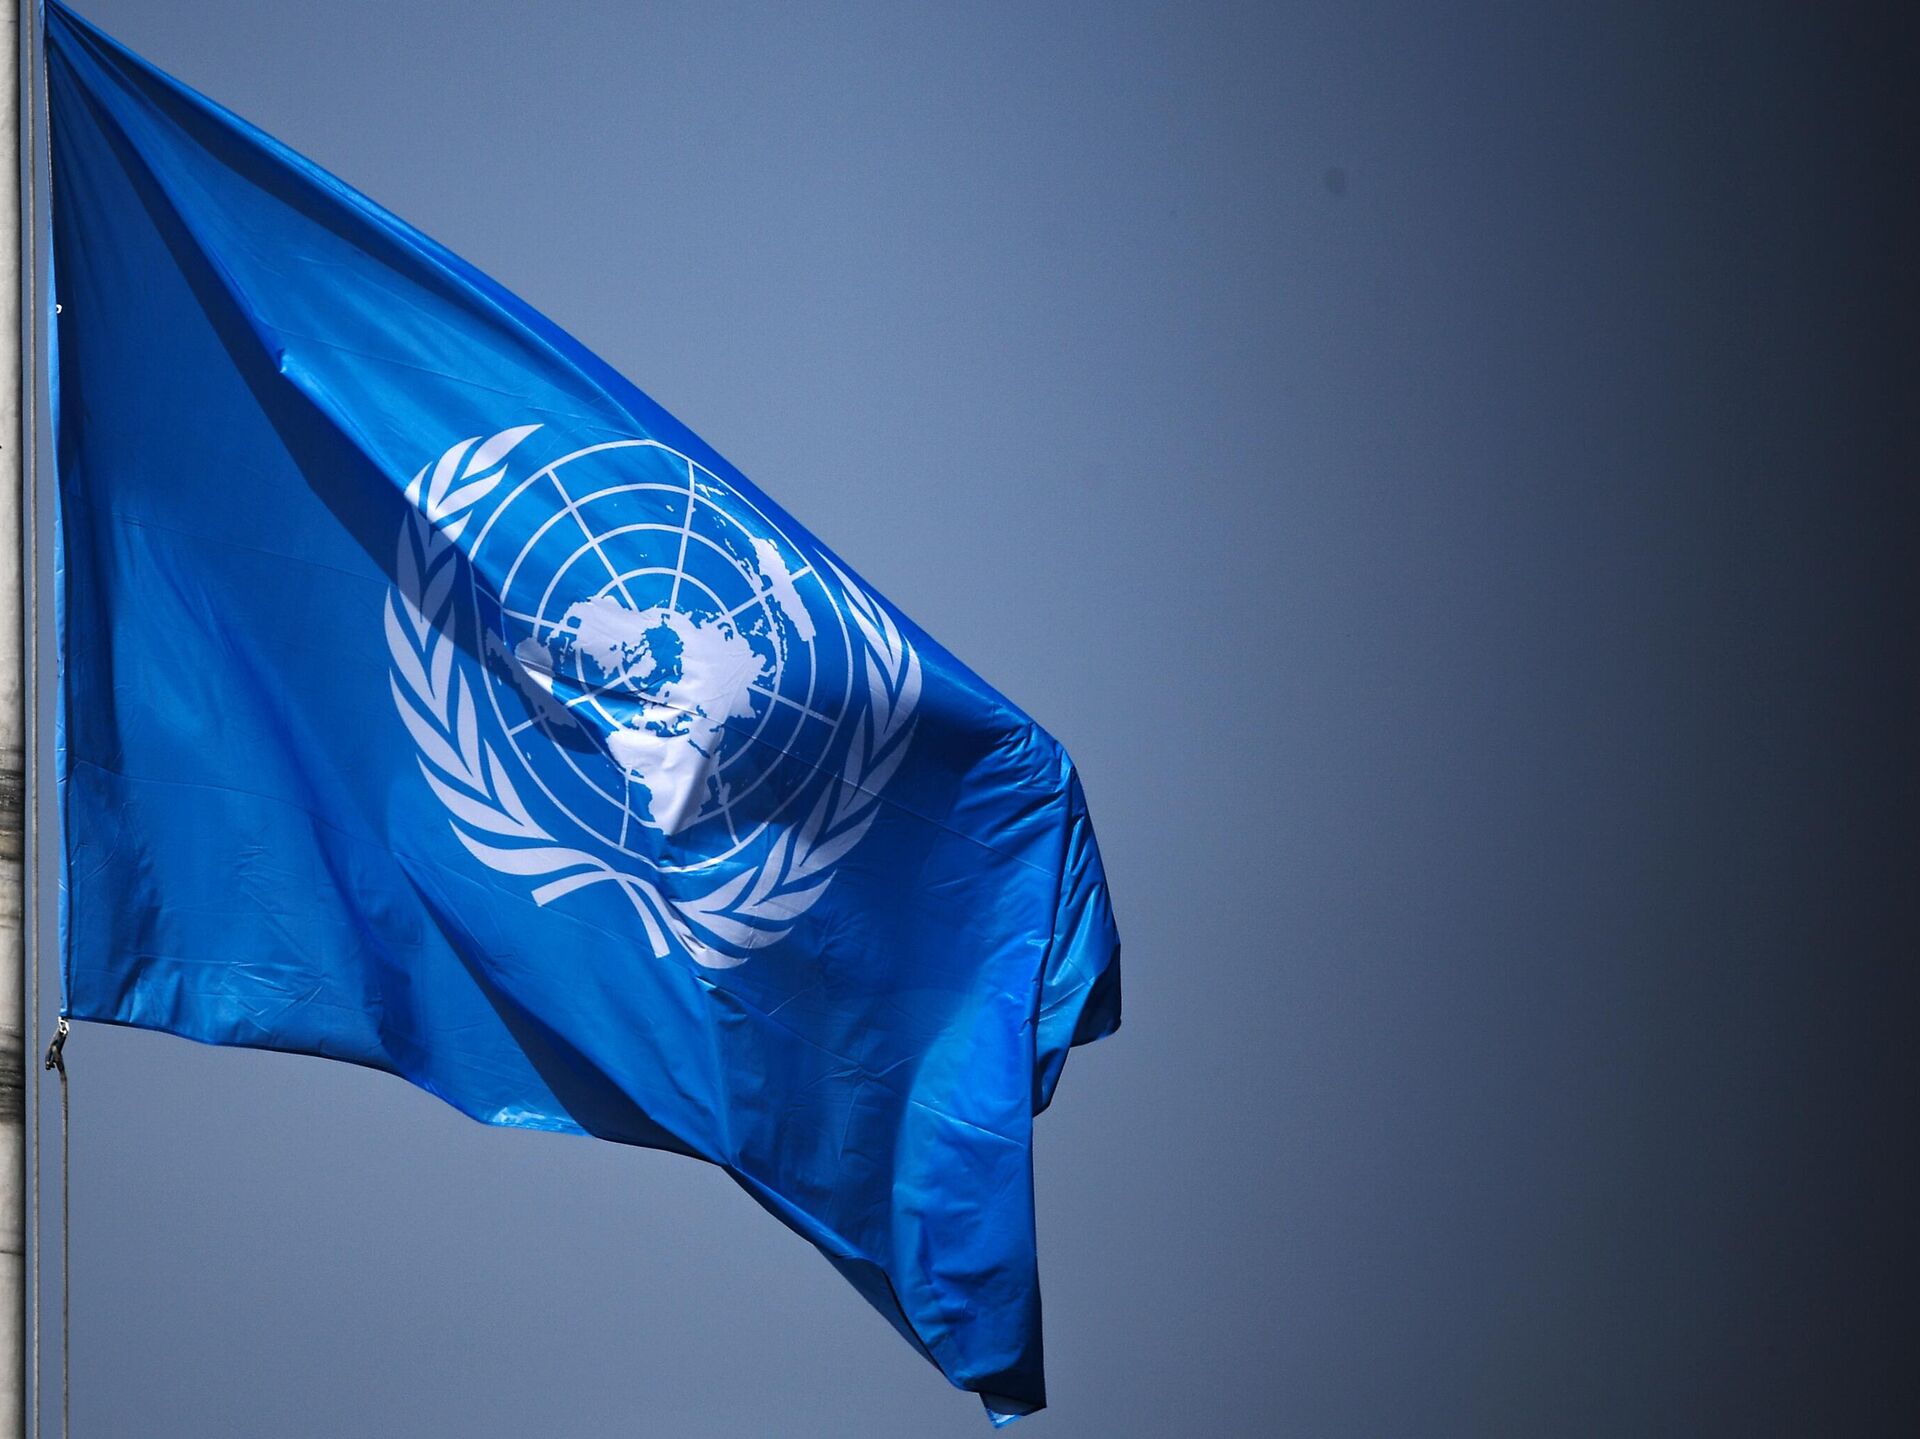 Комиссия по правам человека оон. Флаг ООН. Флаг организации Объединенных наций. Генеральная Ассамблея ООН флаг. Организация Объединенных наций (ООН).